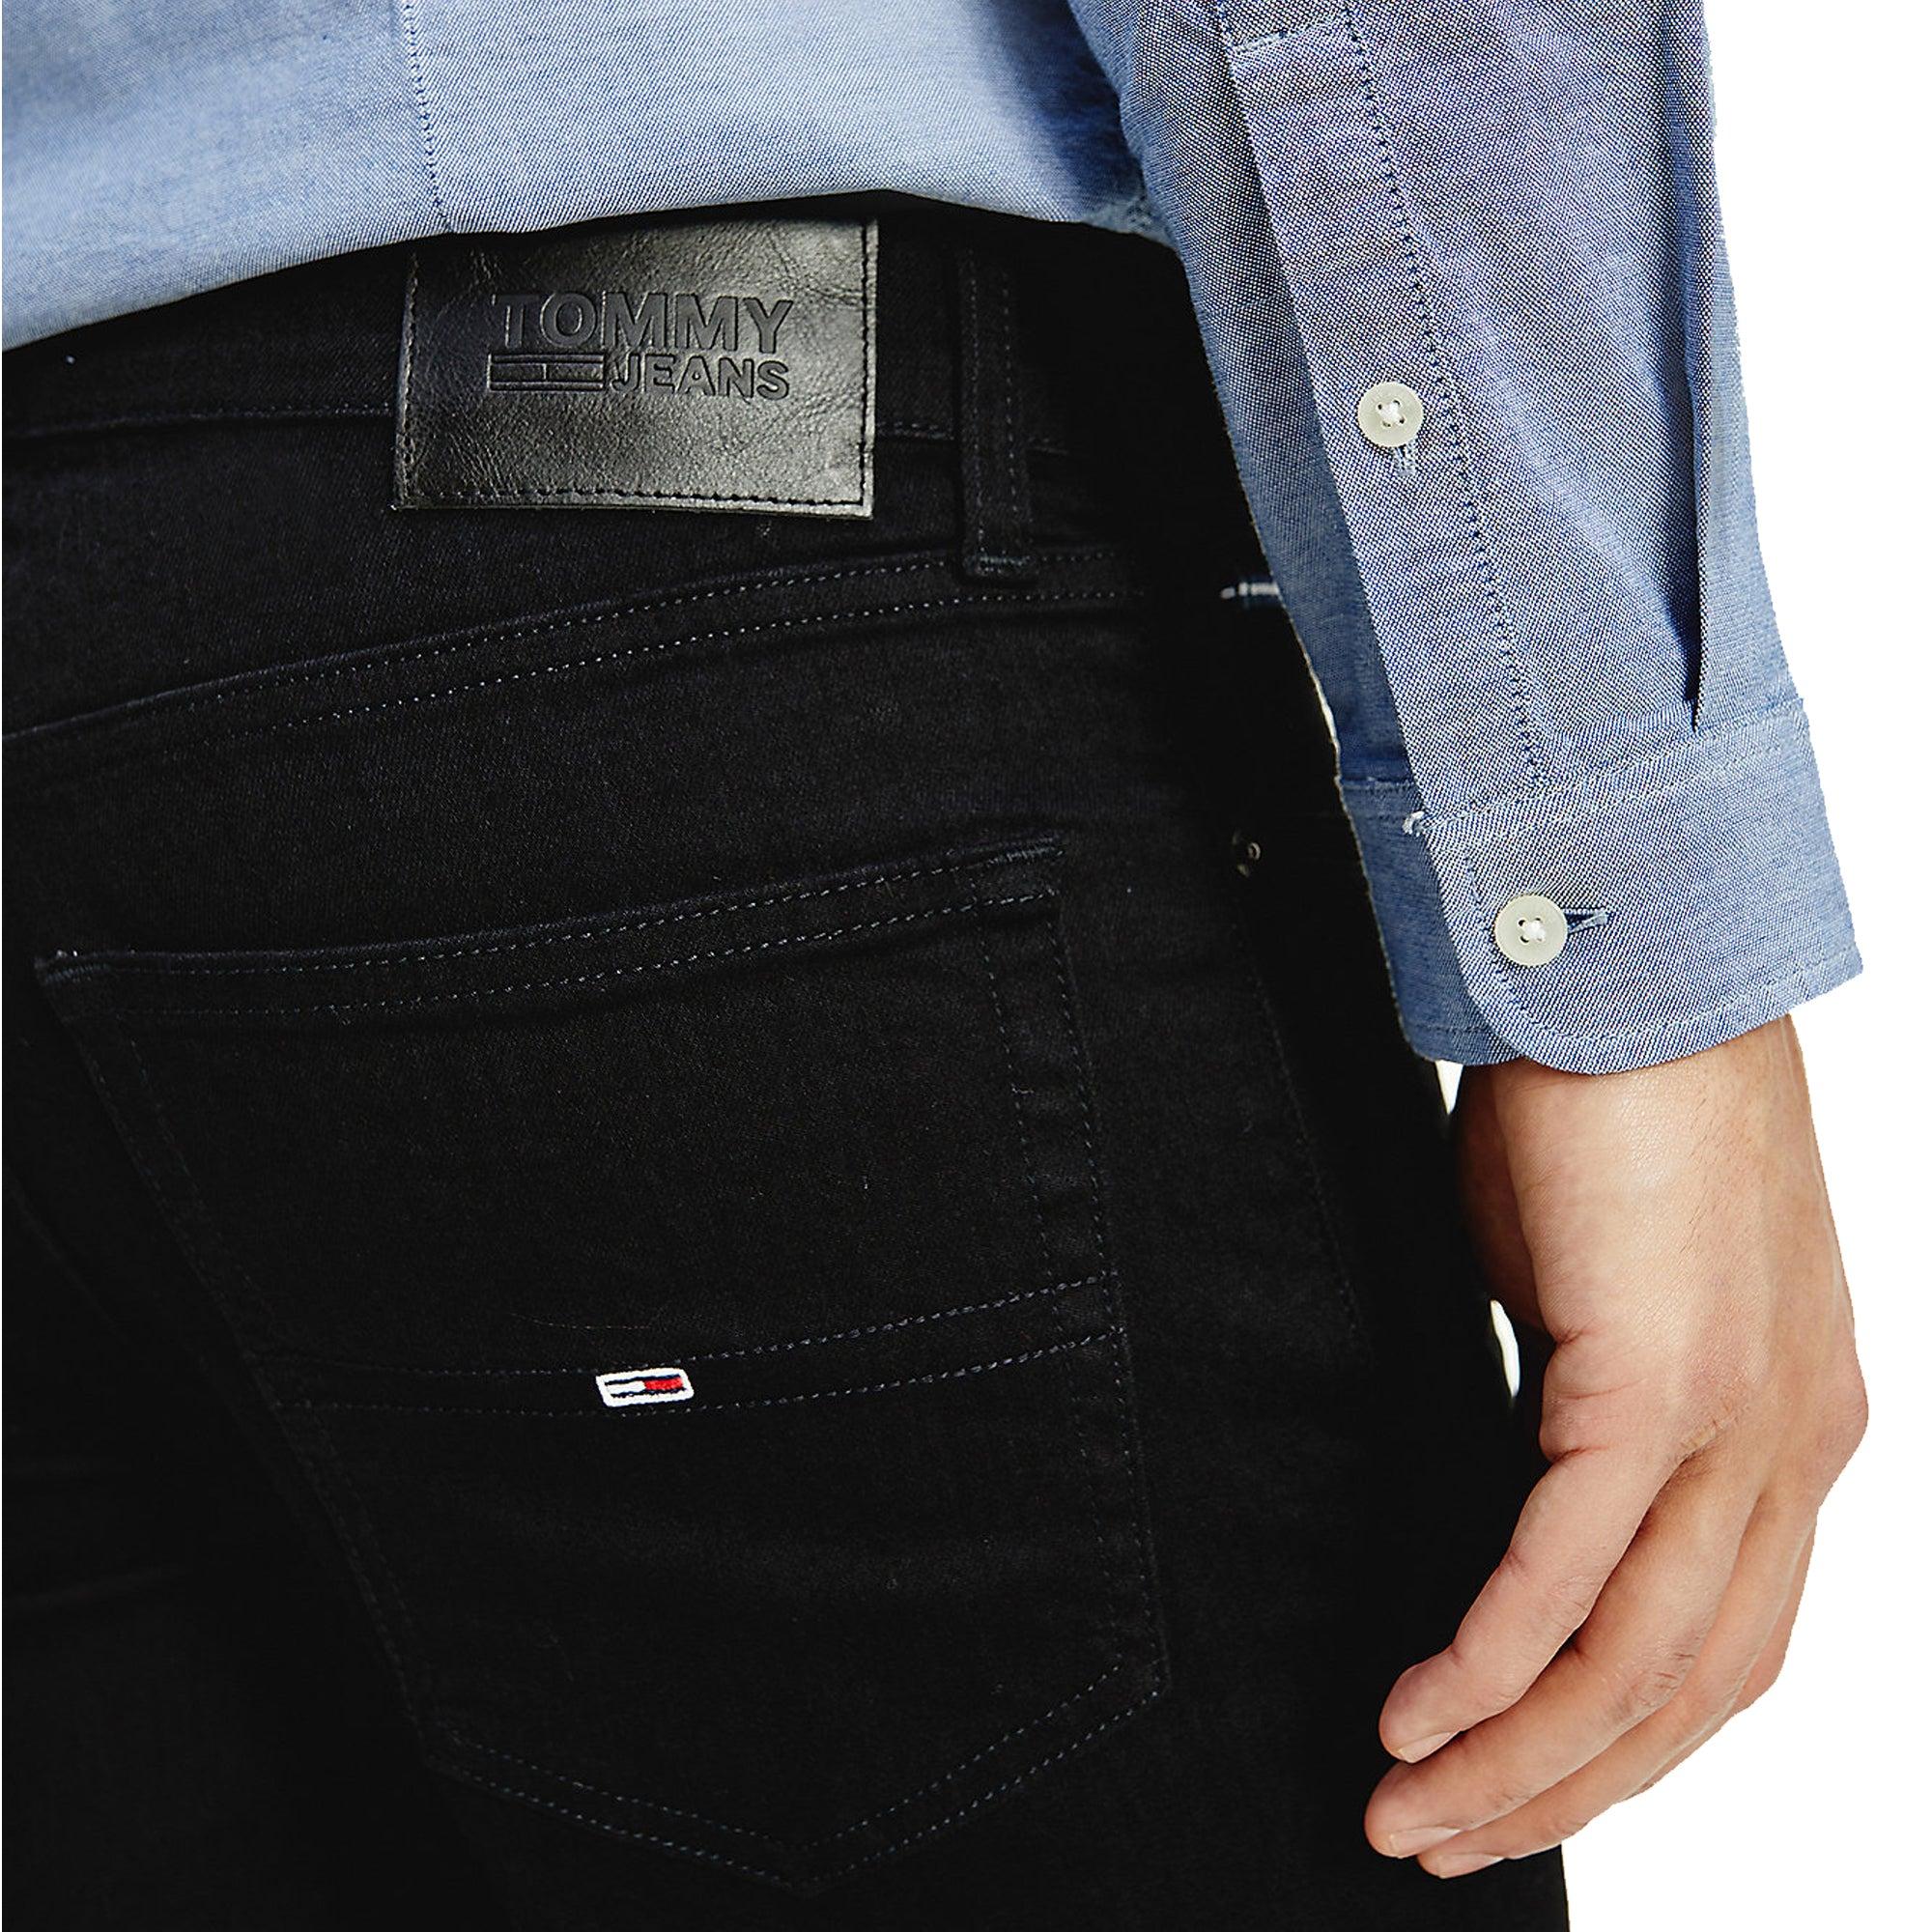 Tommy Hilfiger Denim Scanton Slim Jeans in Black for Men - Save 23% - Lyst